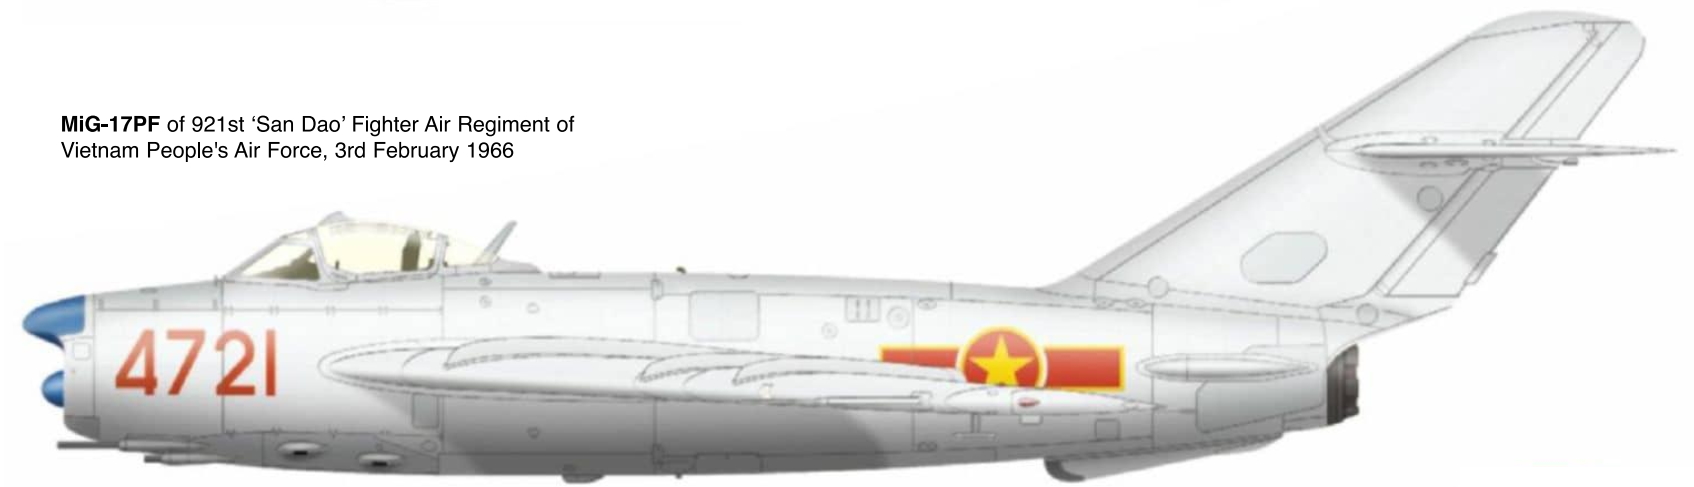 1706507113 208 MiG 17 in Vietnam